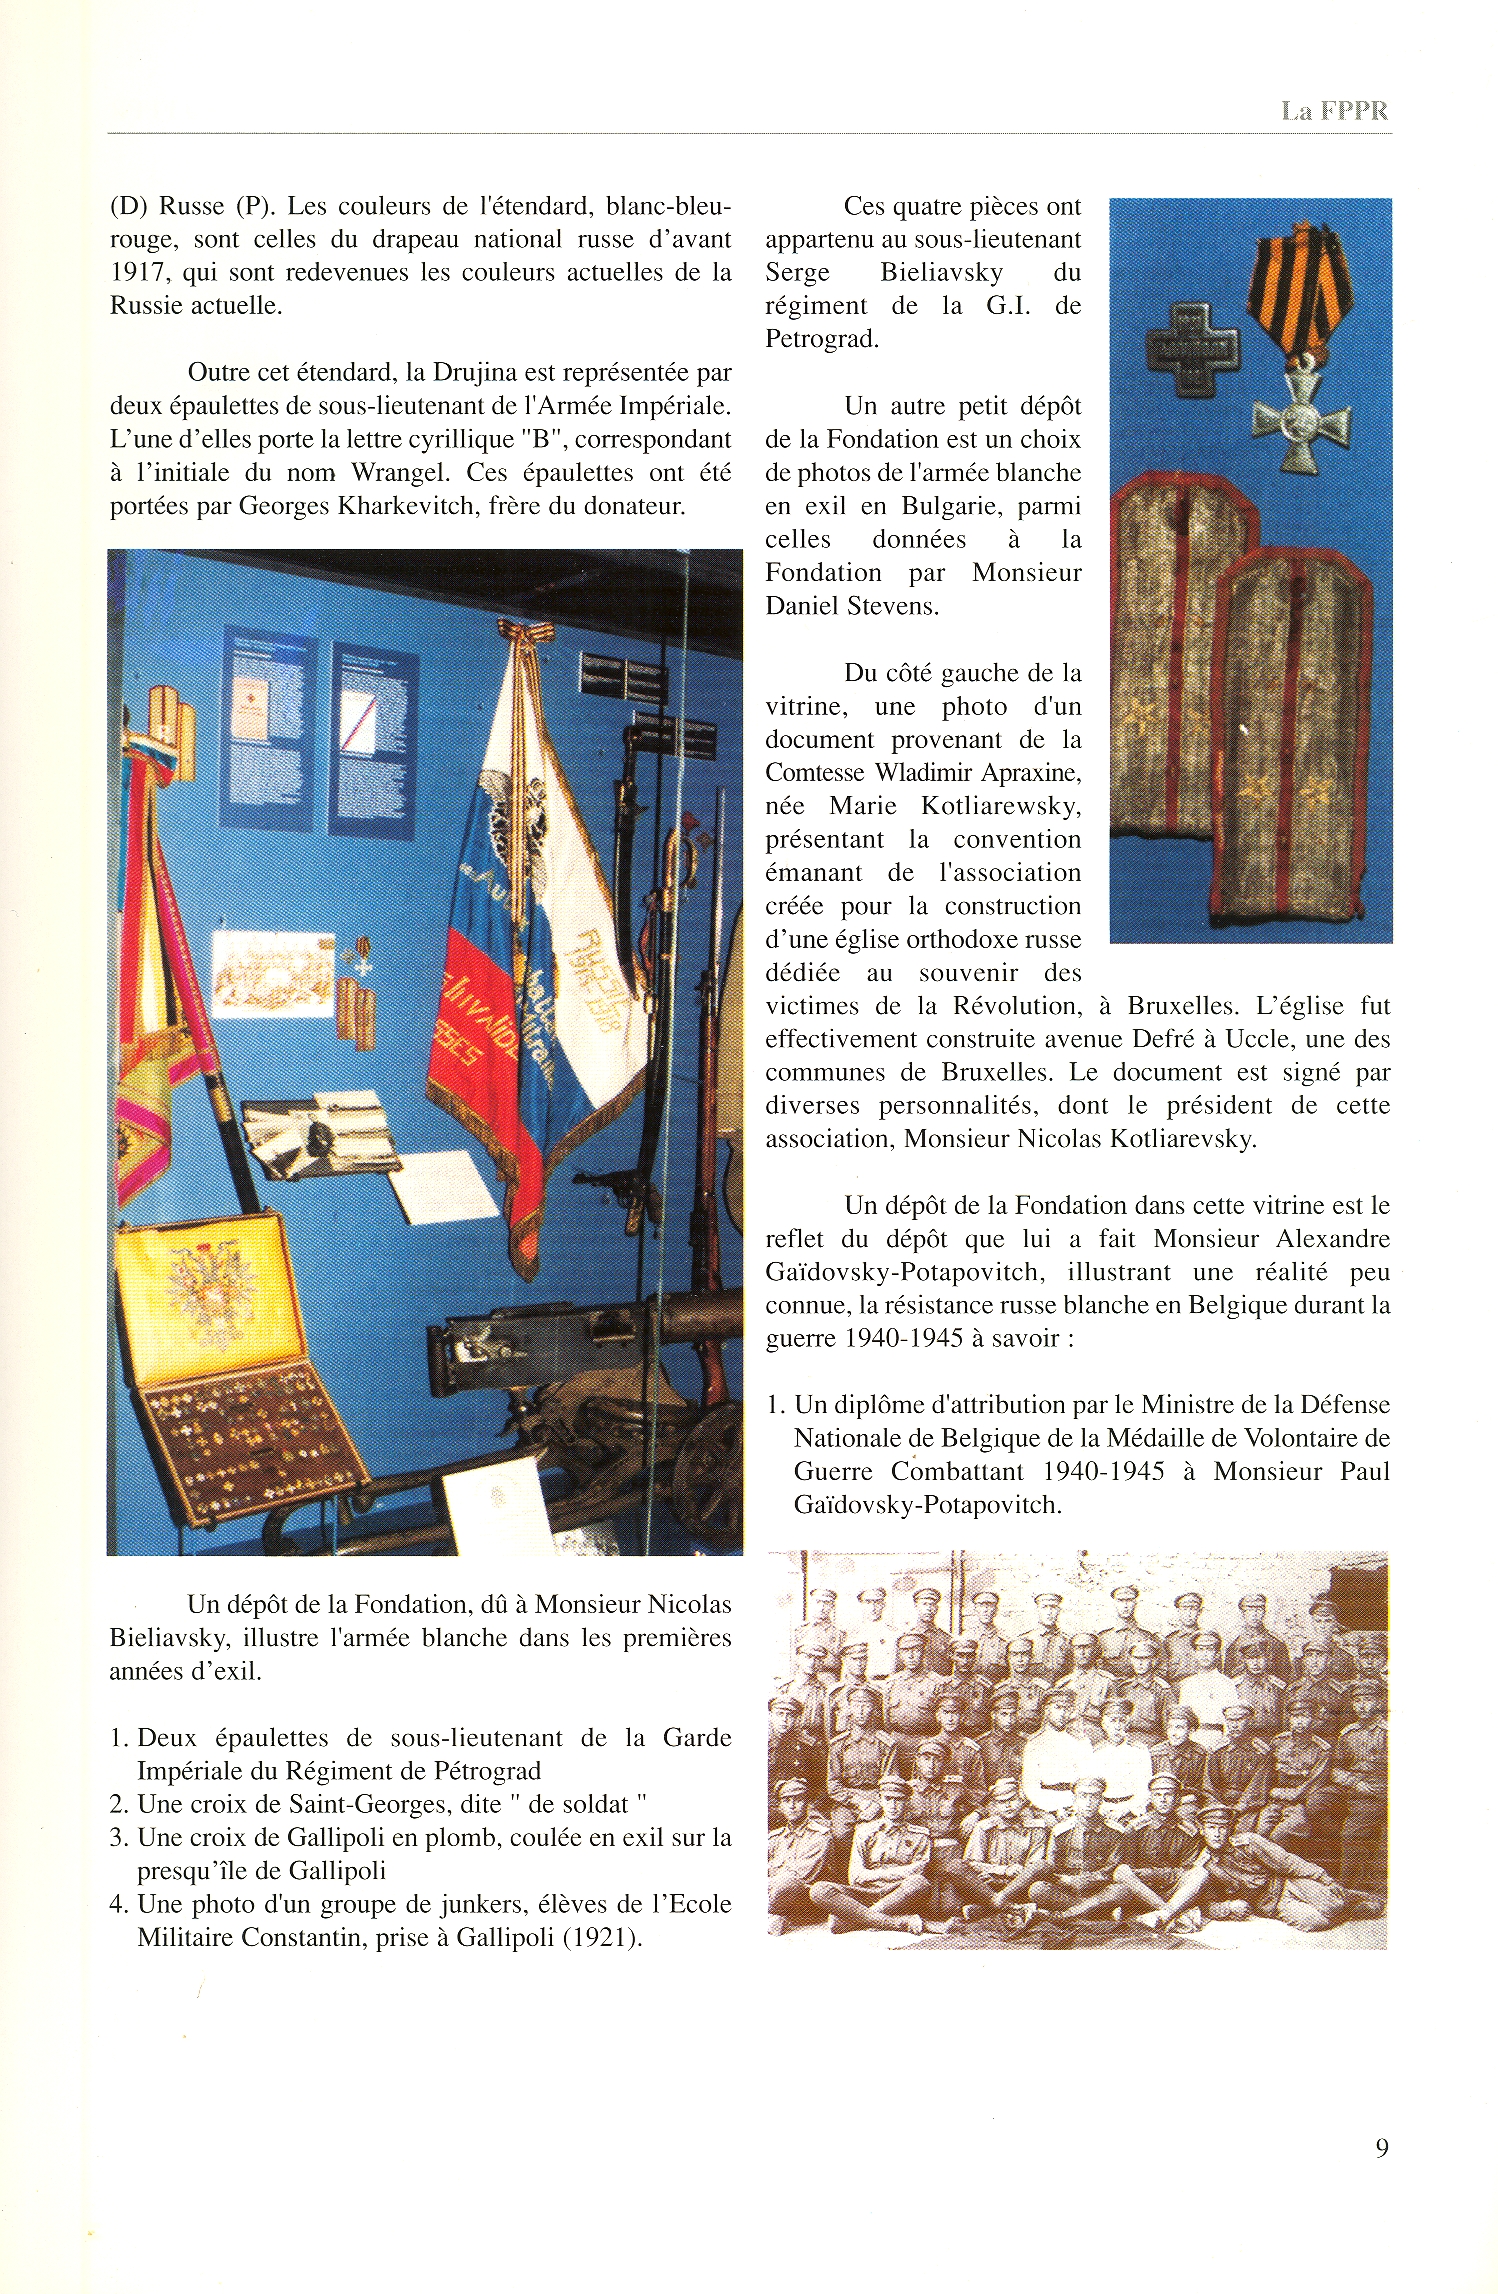 FPPR Revue 01 2002 11. Page 09. La Vitrine de l|Emigration au Musée de l|Armée de Bruxelles. Un exemple de notre action par Daniel Stevens